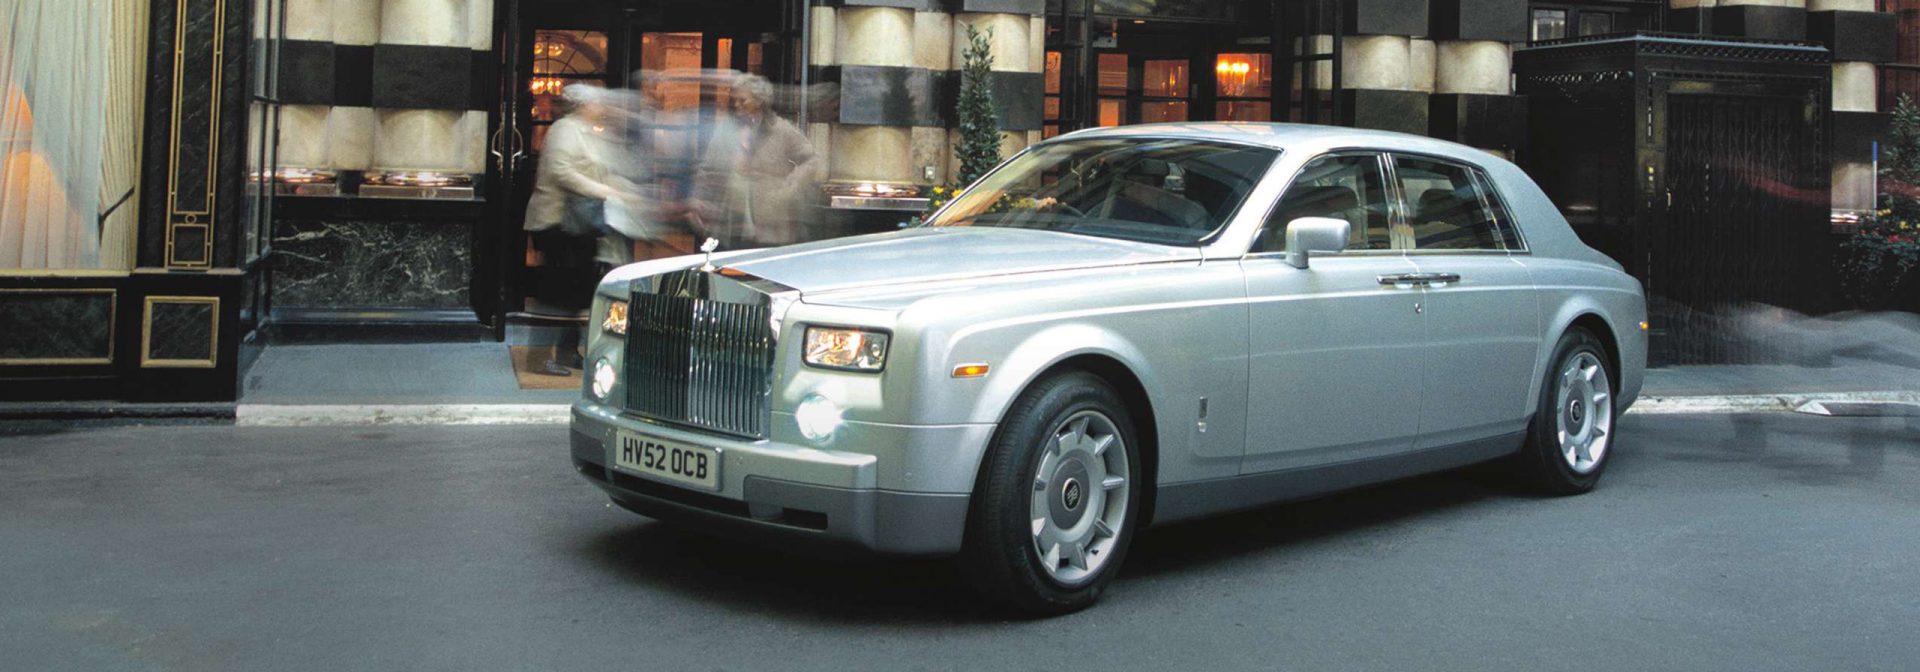 Rolls-Royce Motor Cars bringt den neuen Phantom auf den Markt.